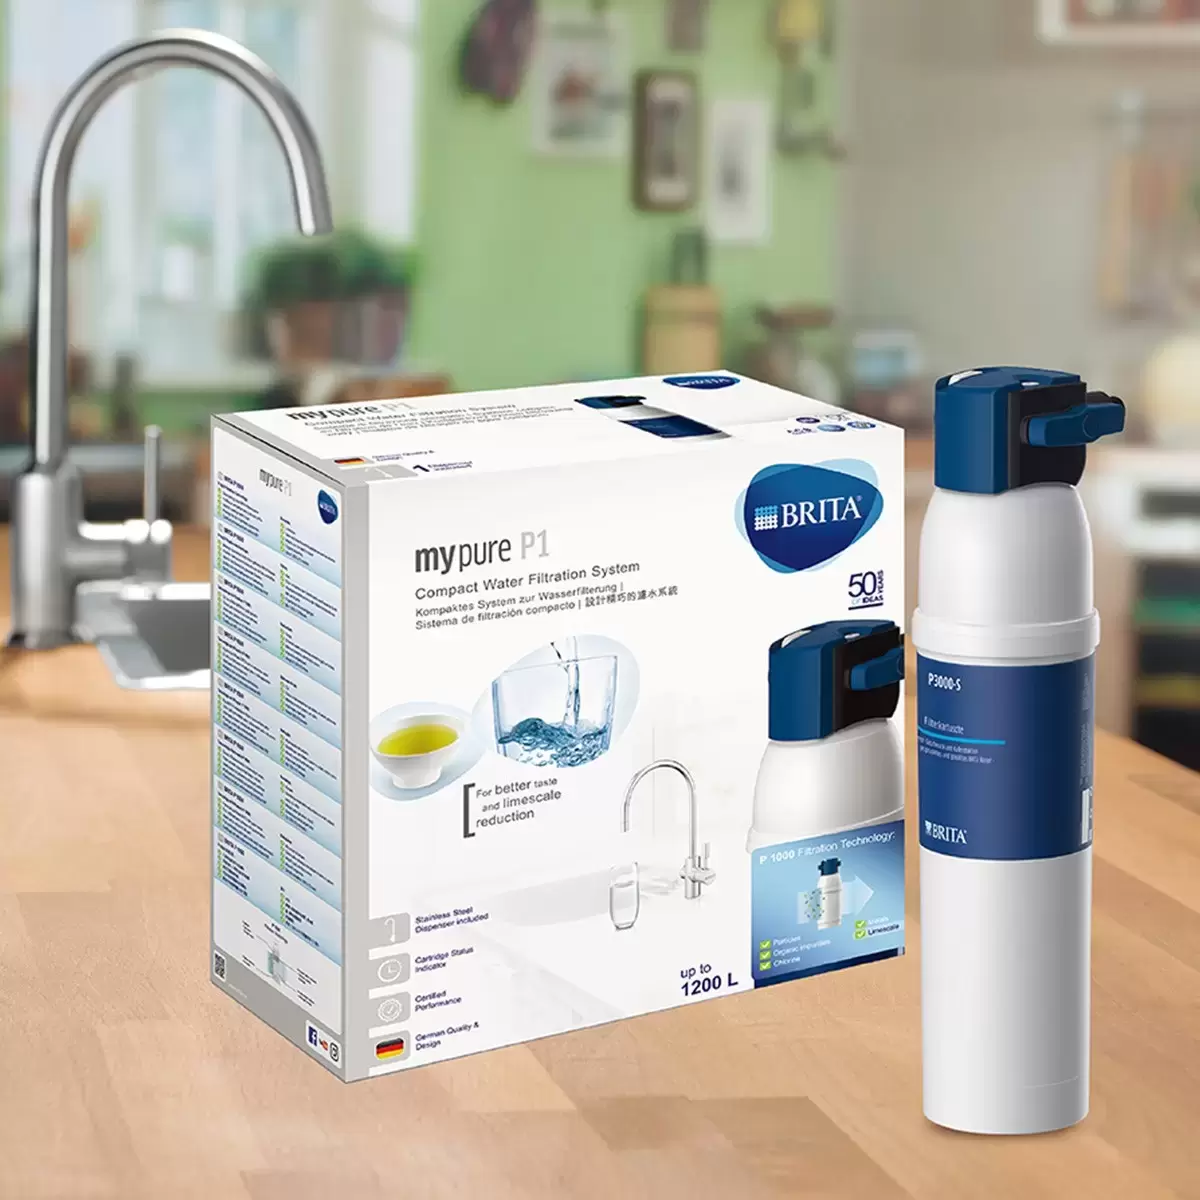 BRITA mypure P1 – Compact Water Filter Under Sink